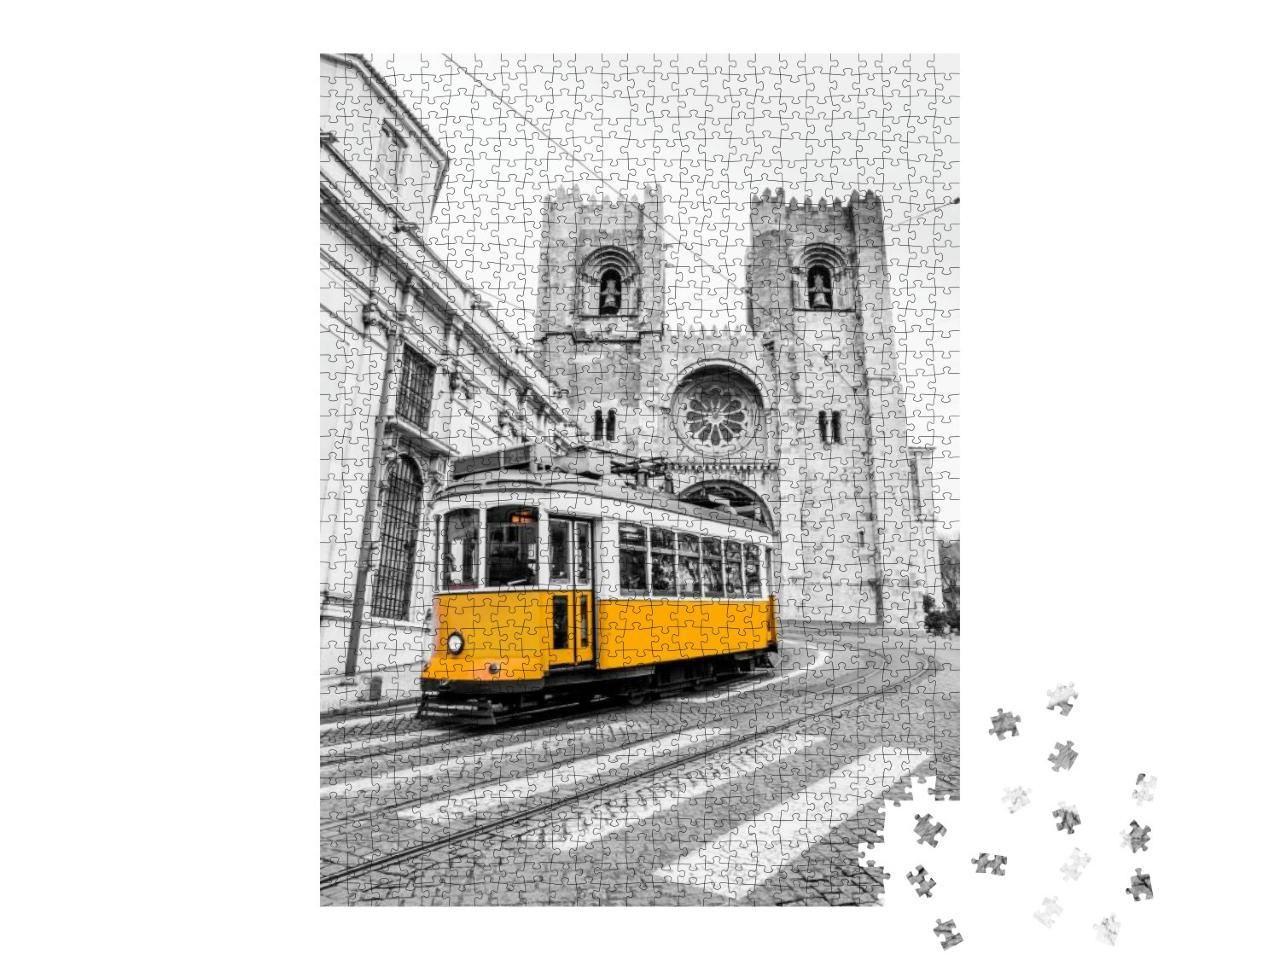 Puzzle 1000 Teile „Gelbe Straßenbahn der Linie 28 in Lissabon, Portugal“